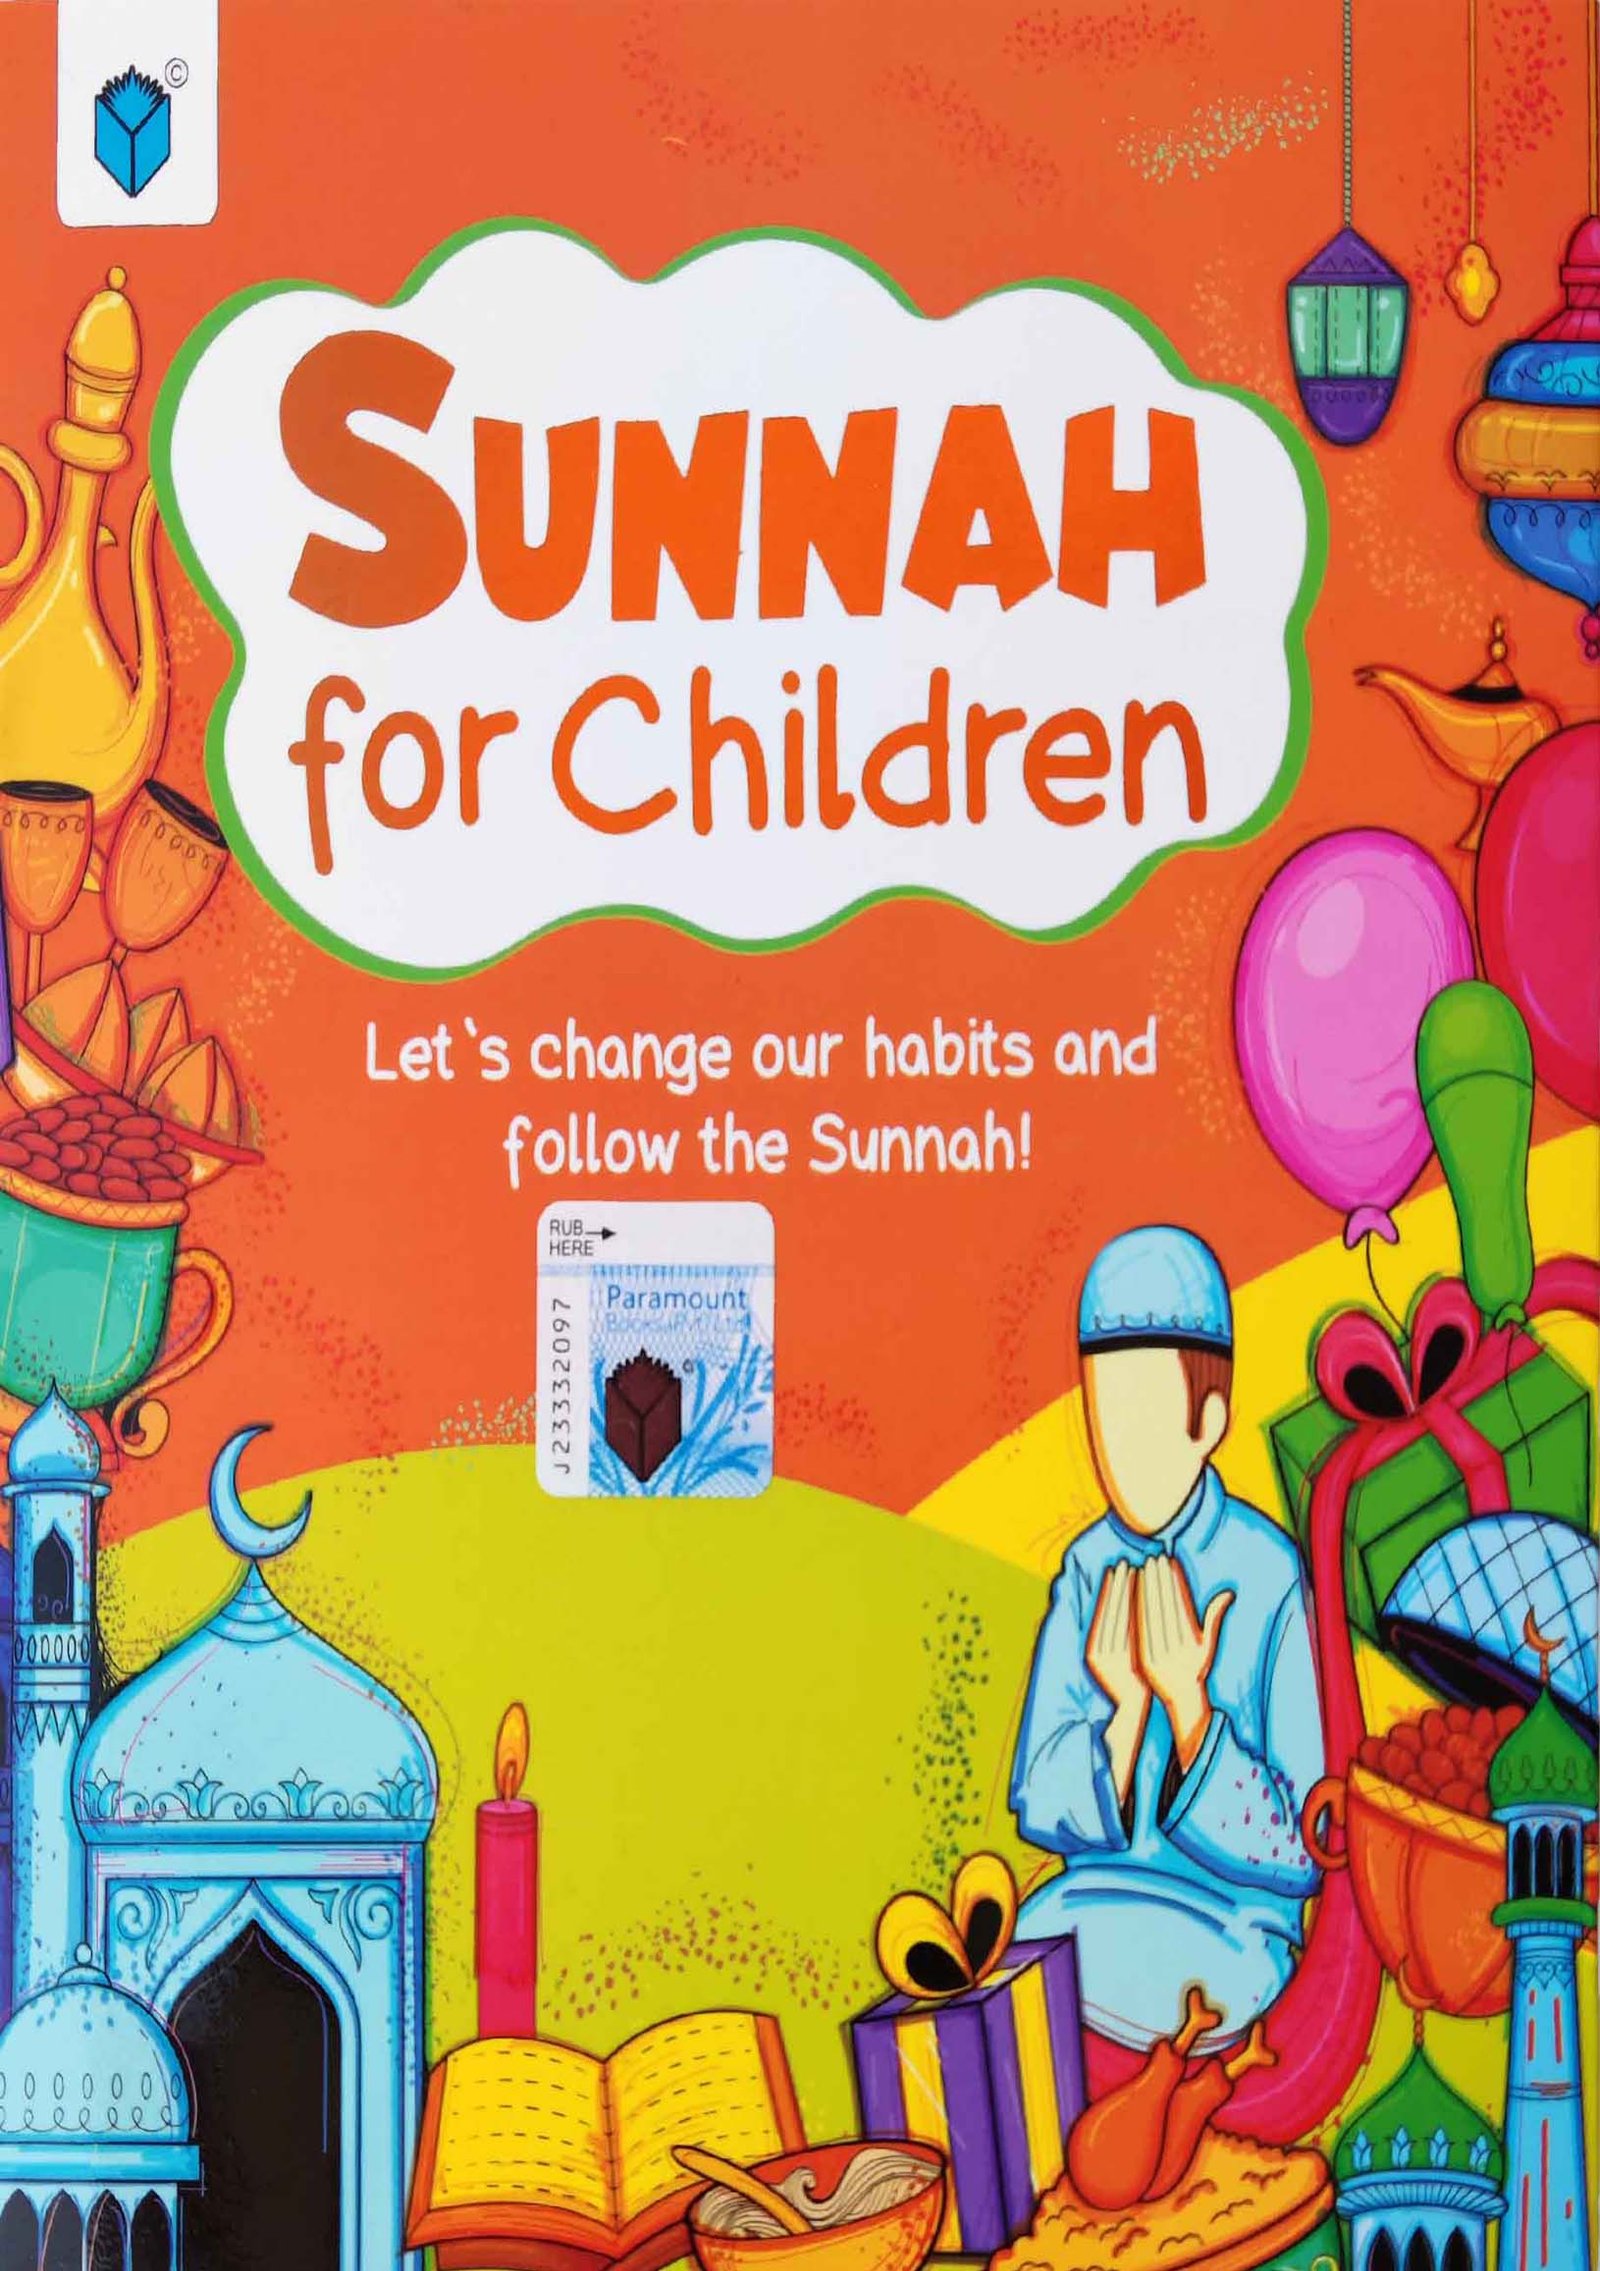 SUNNAH FOR CHILDREN